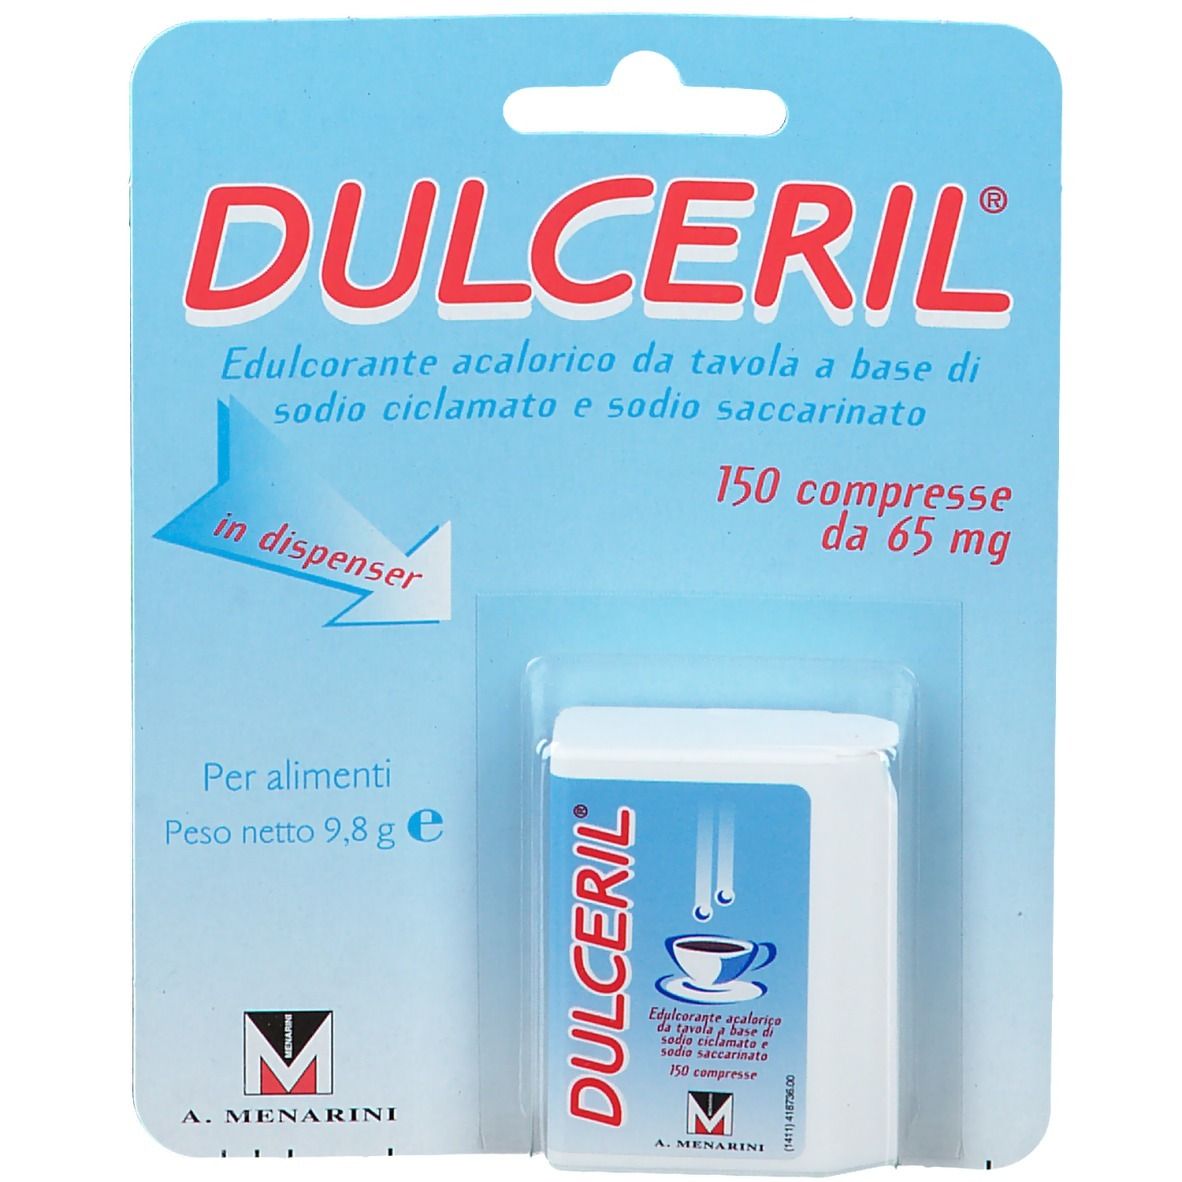 Dulceril® Dolcificante acalorico